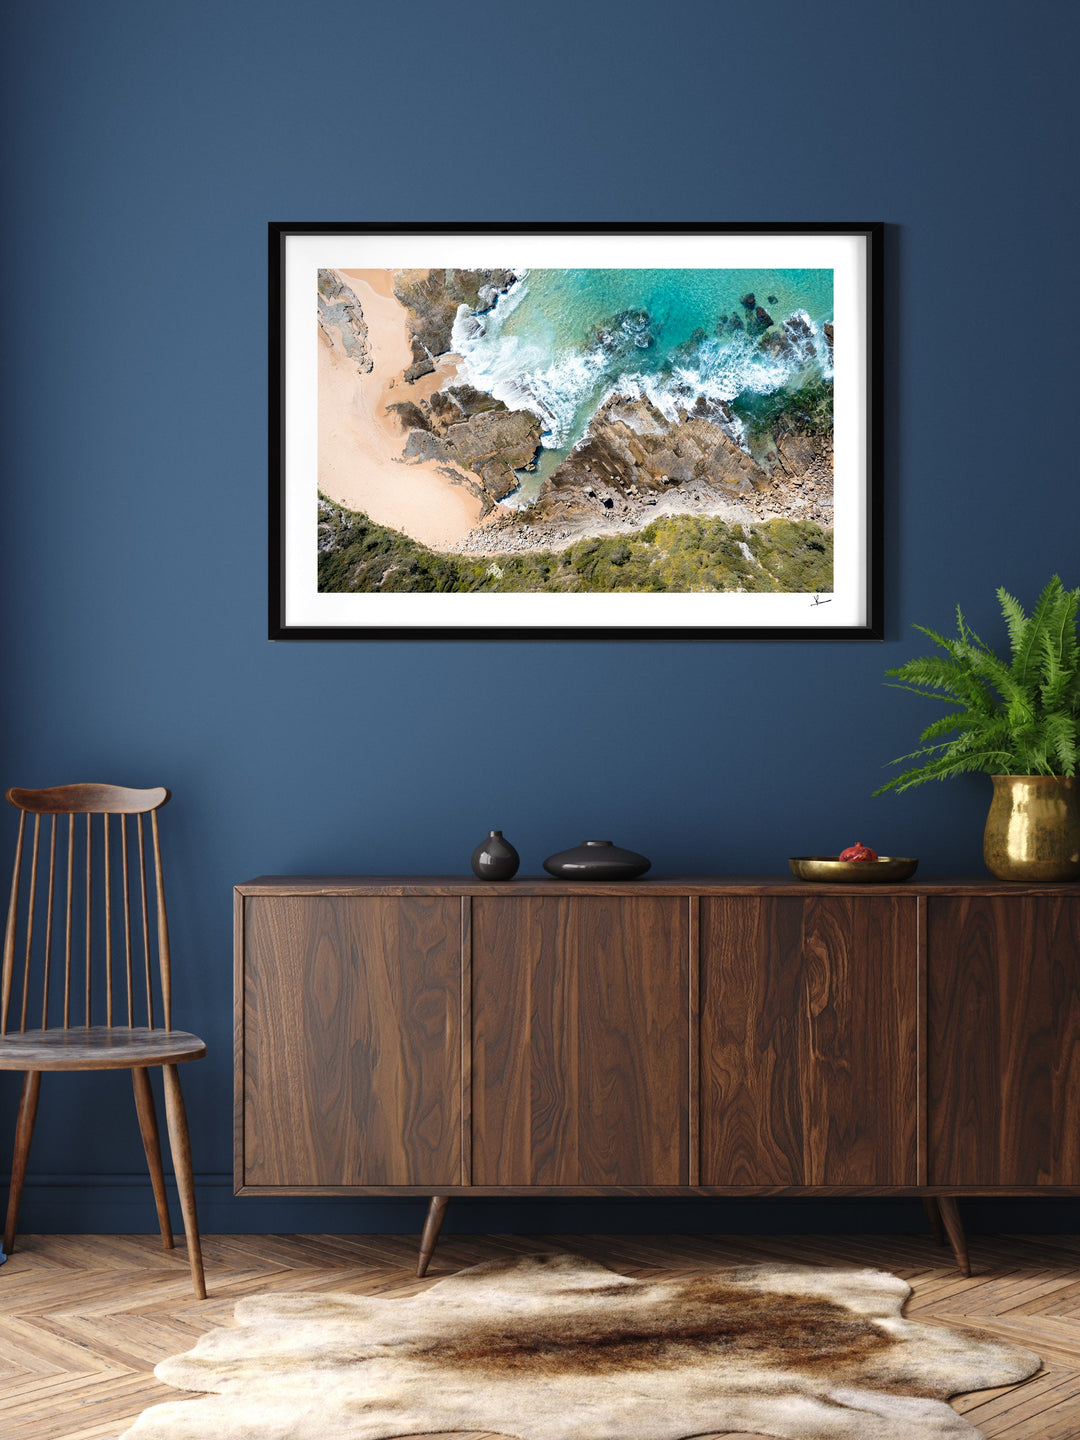 Turimetta Beach 01 - Australia Unseen - Wall Art Print